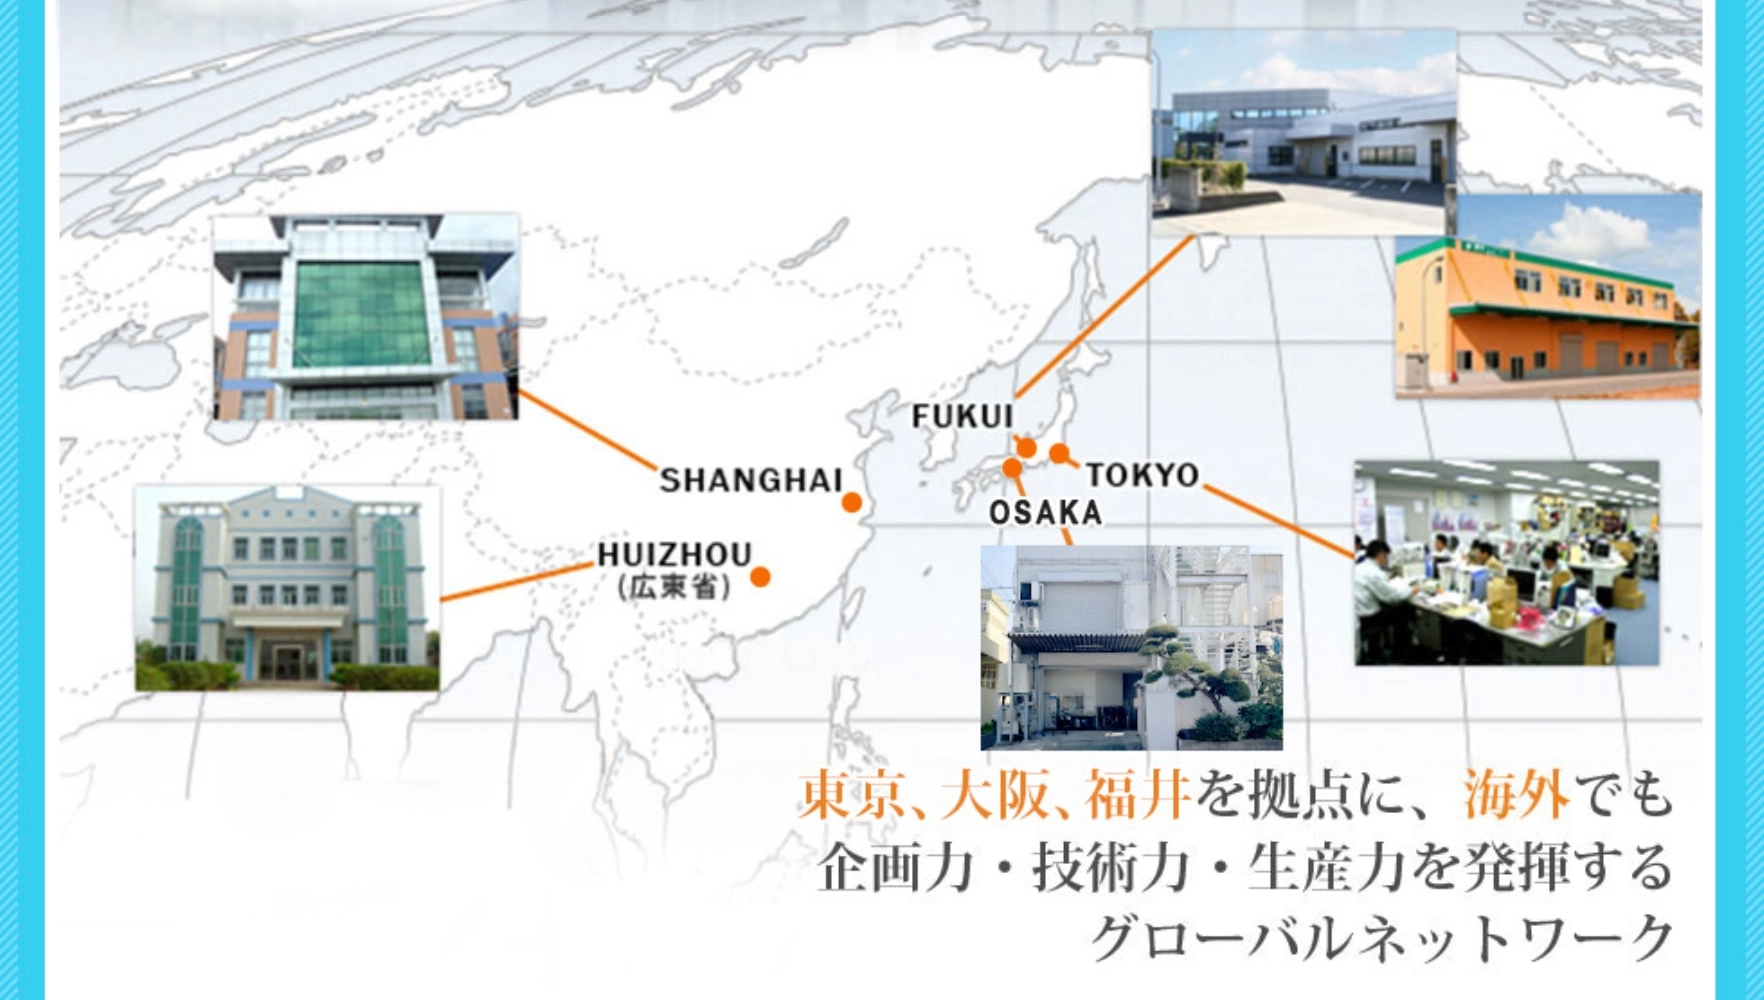 東京、大阪、福井を拠点に、海外でも企画力・技術力・生産力を発揮するグローバルネットワーク